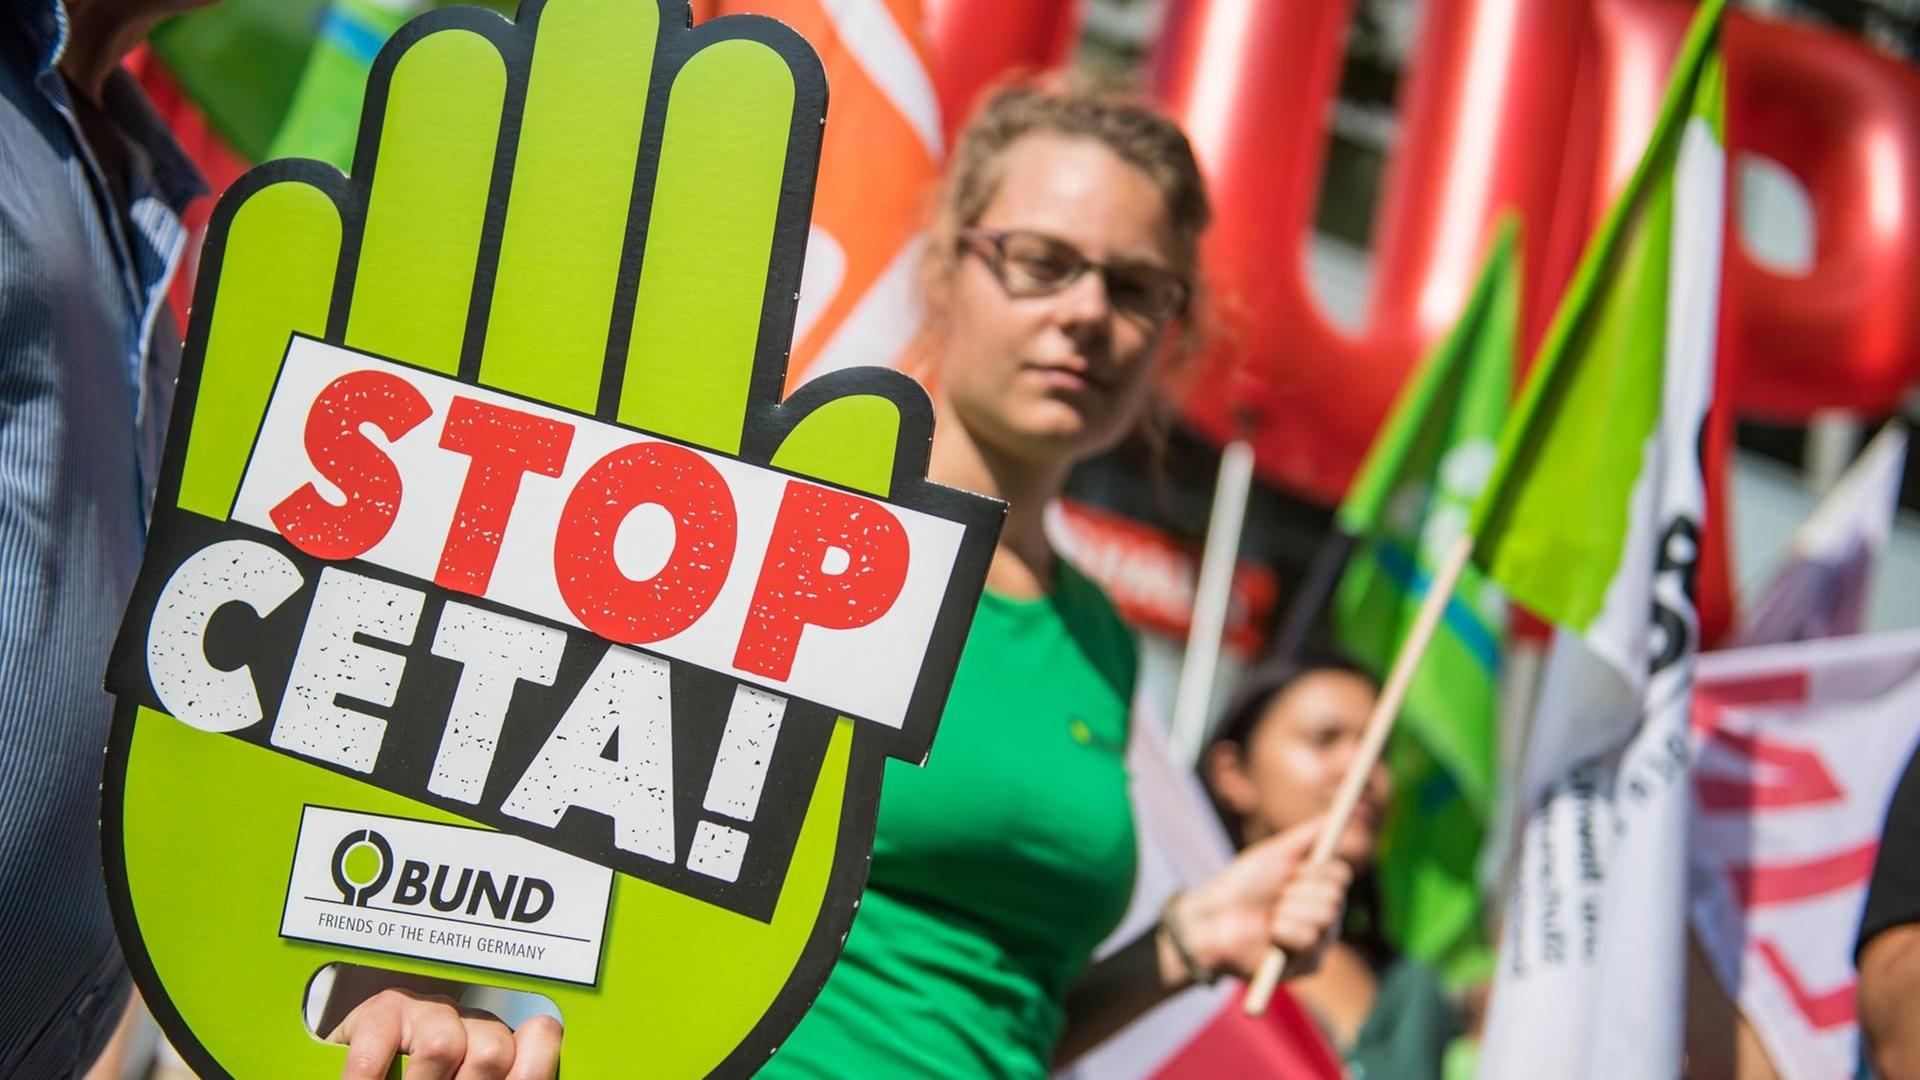 EU-Handelsabkommen Ceta - Umweltverbände reagieren empört auf Ratifizierung der Ampel-Fraktionen